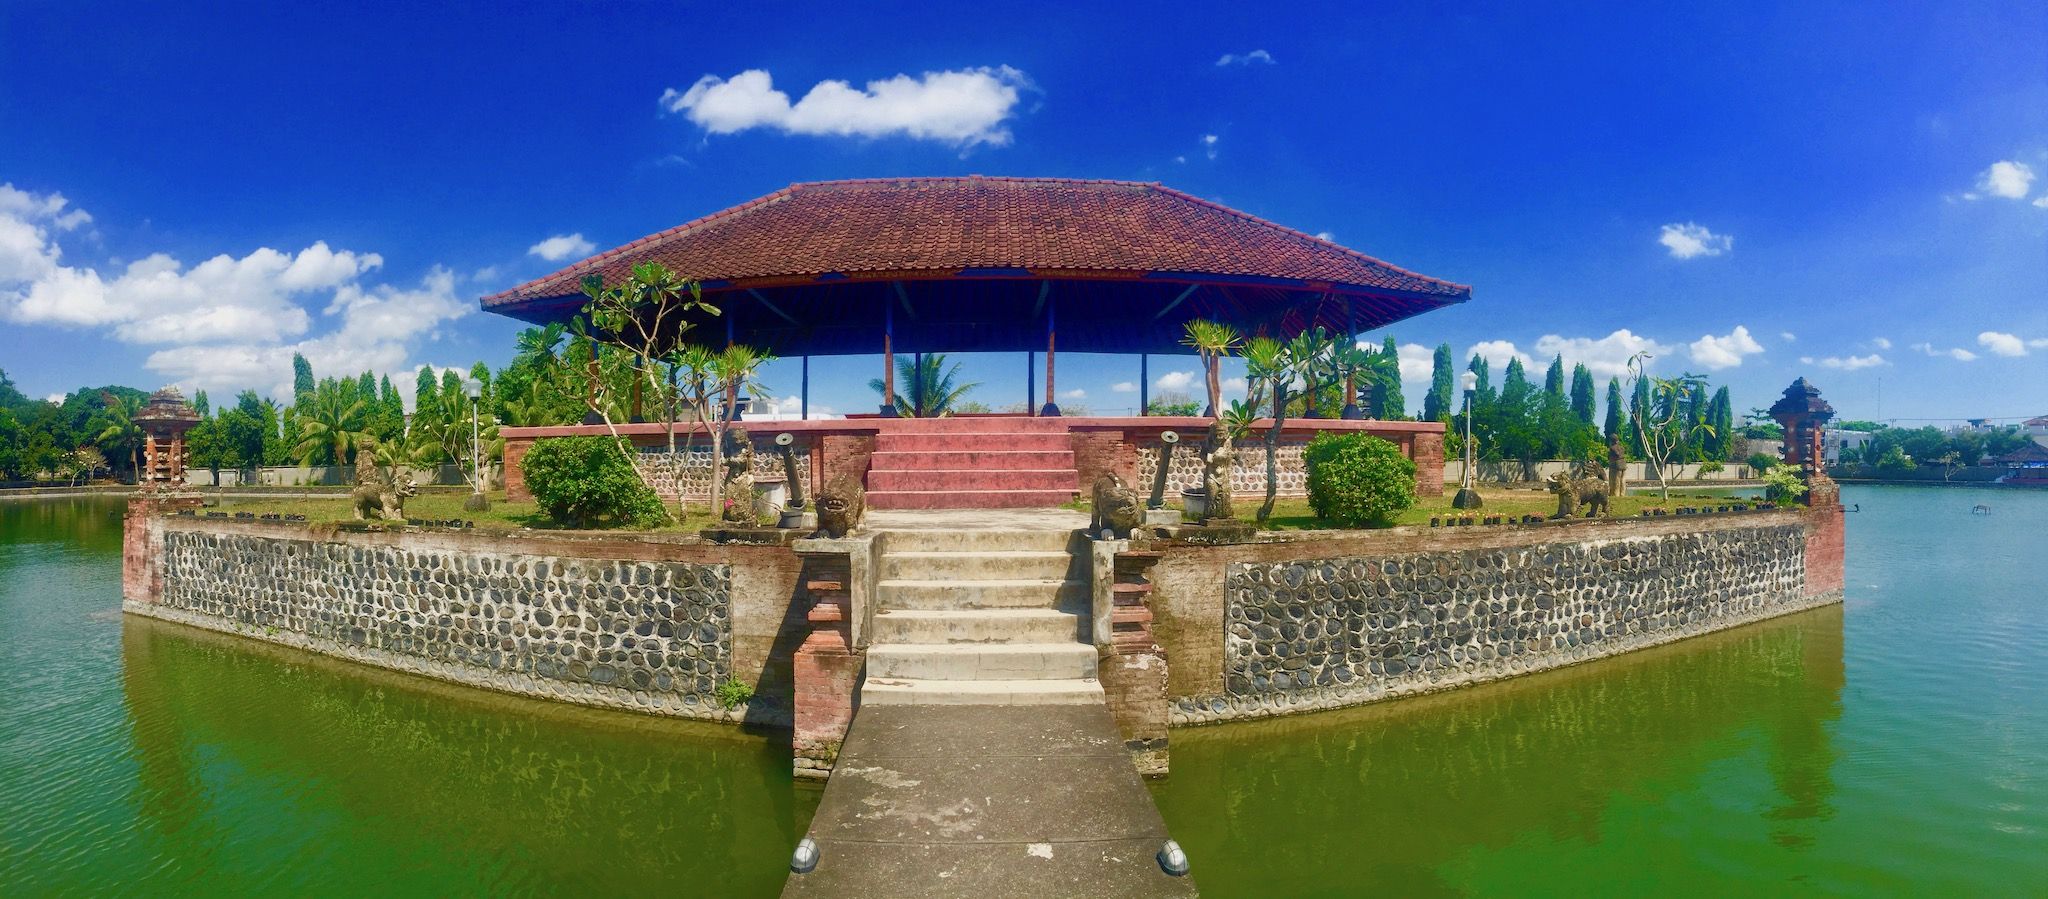 Indonesiens turtips – ø-staten tiltrækker med paradisiske steder